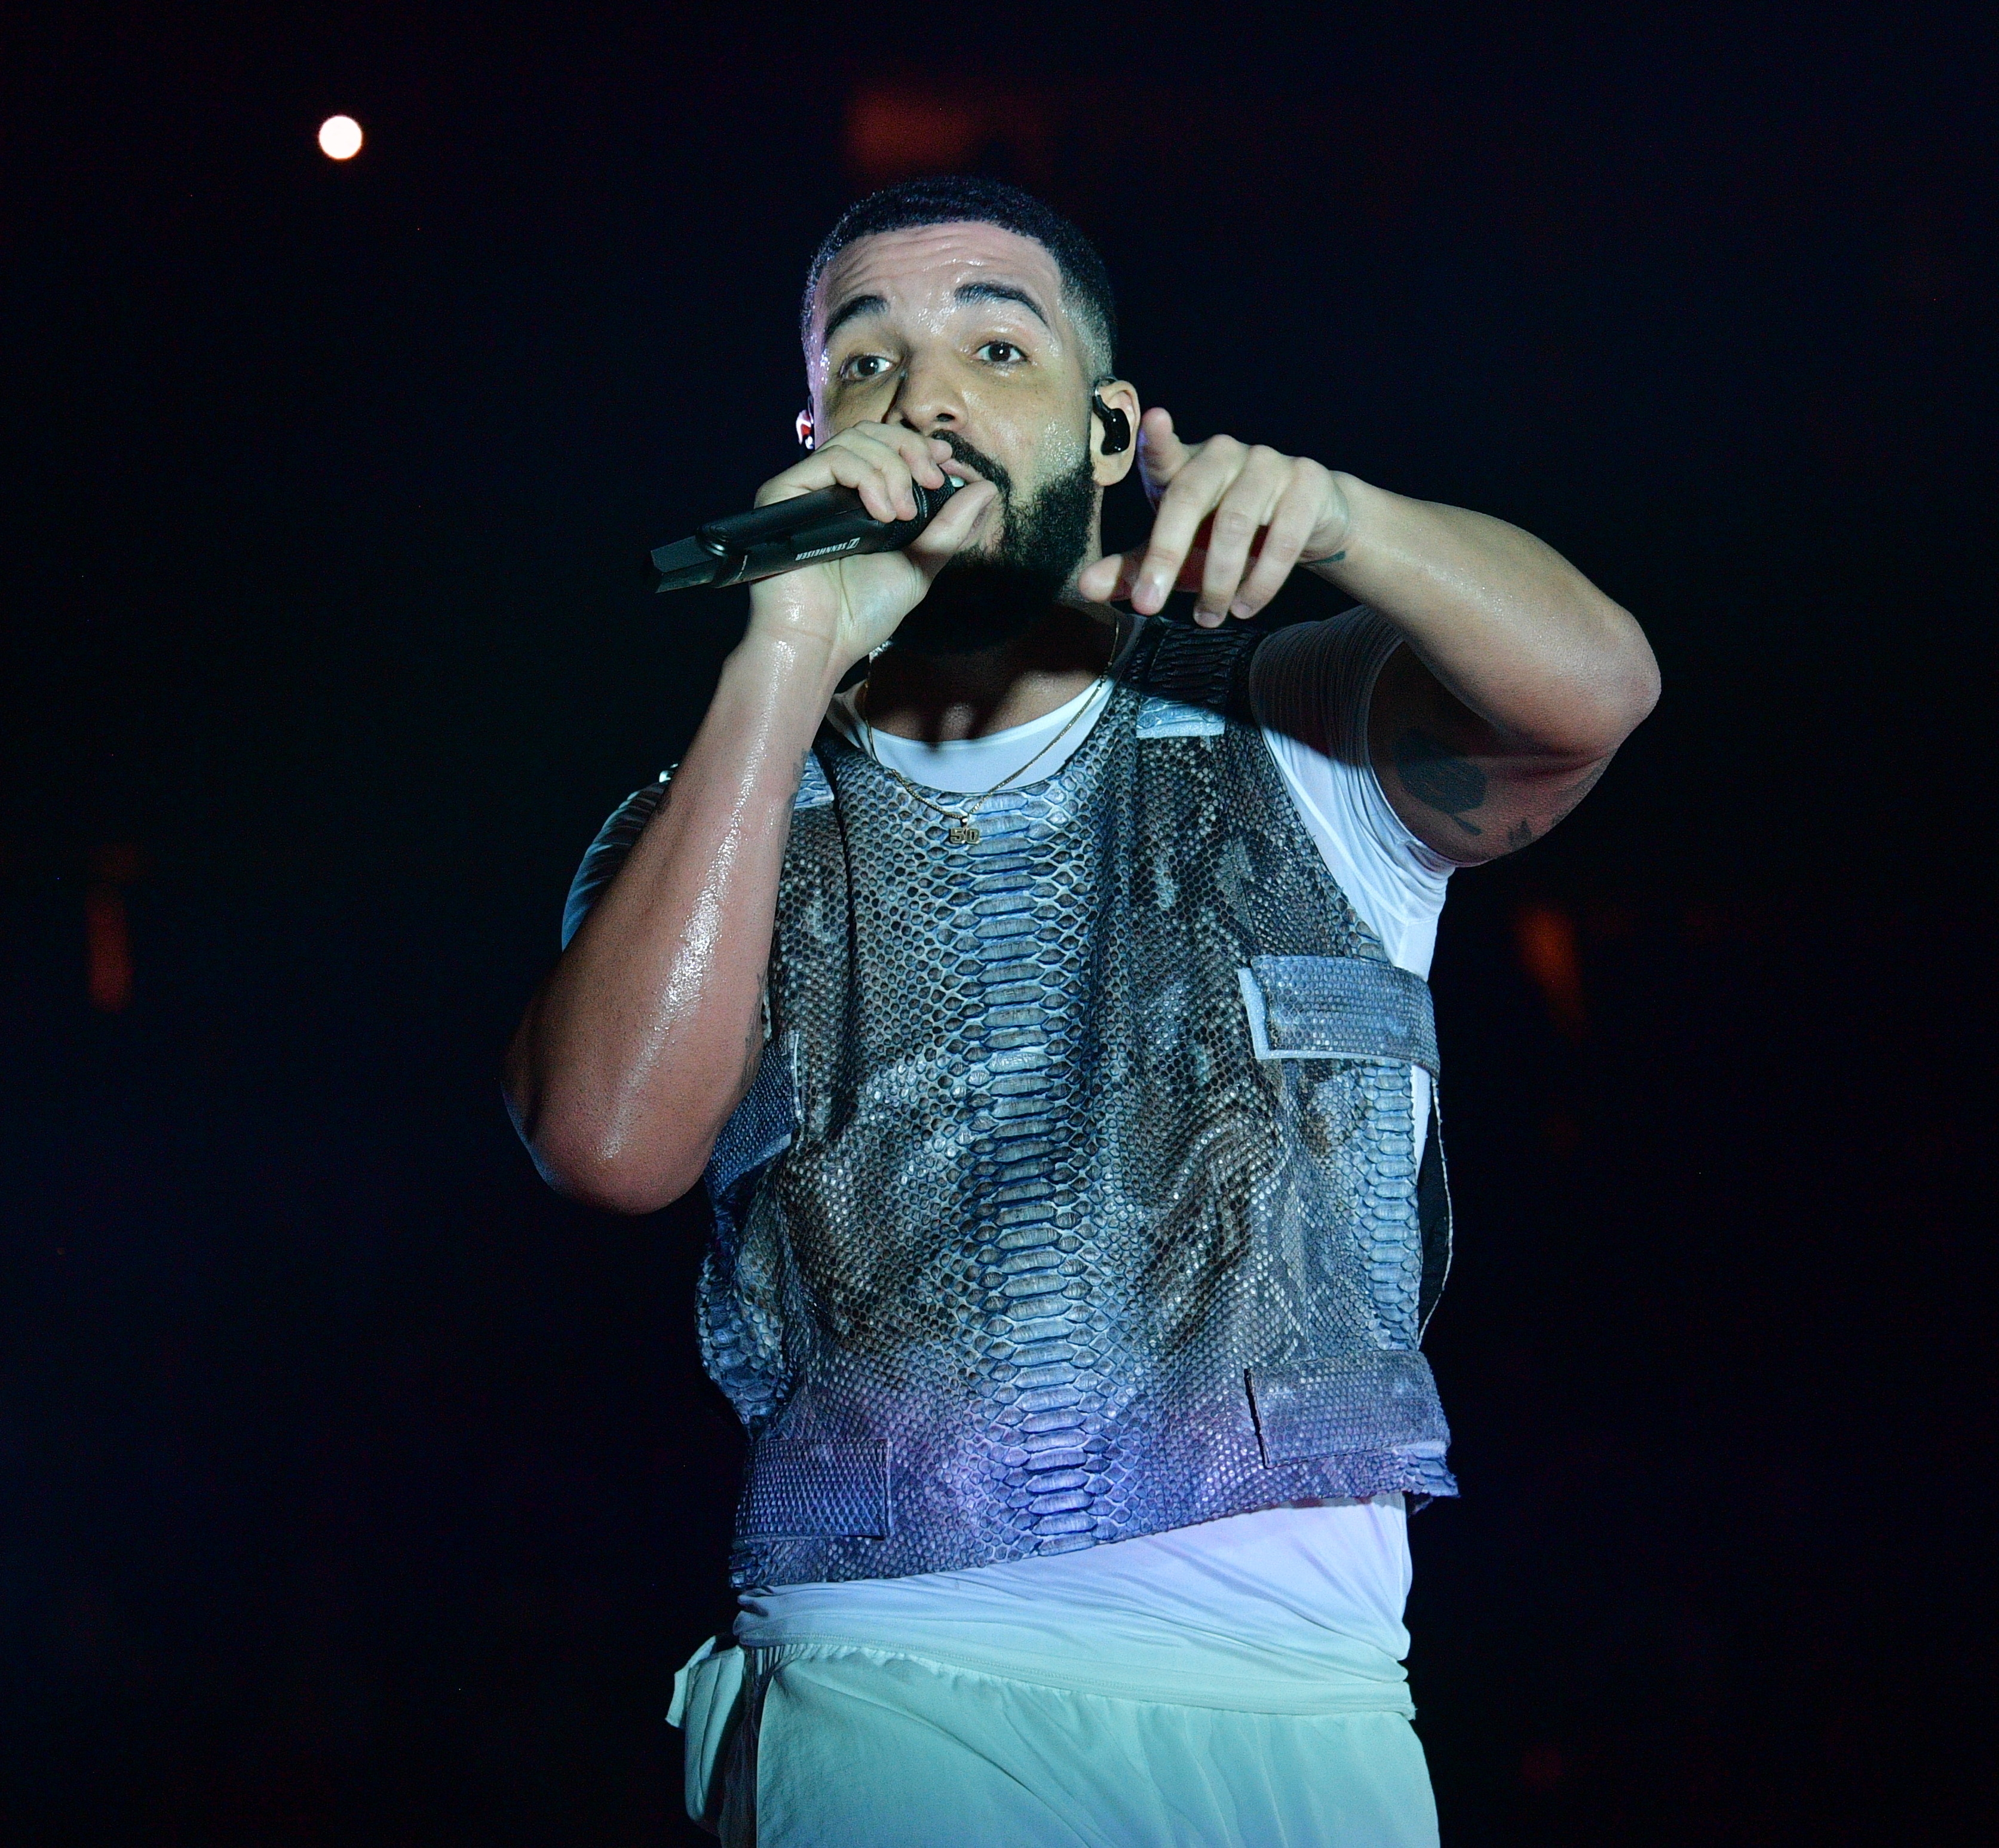 Drake performing on stage